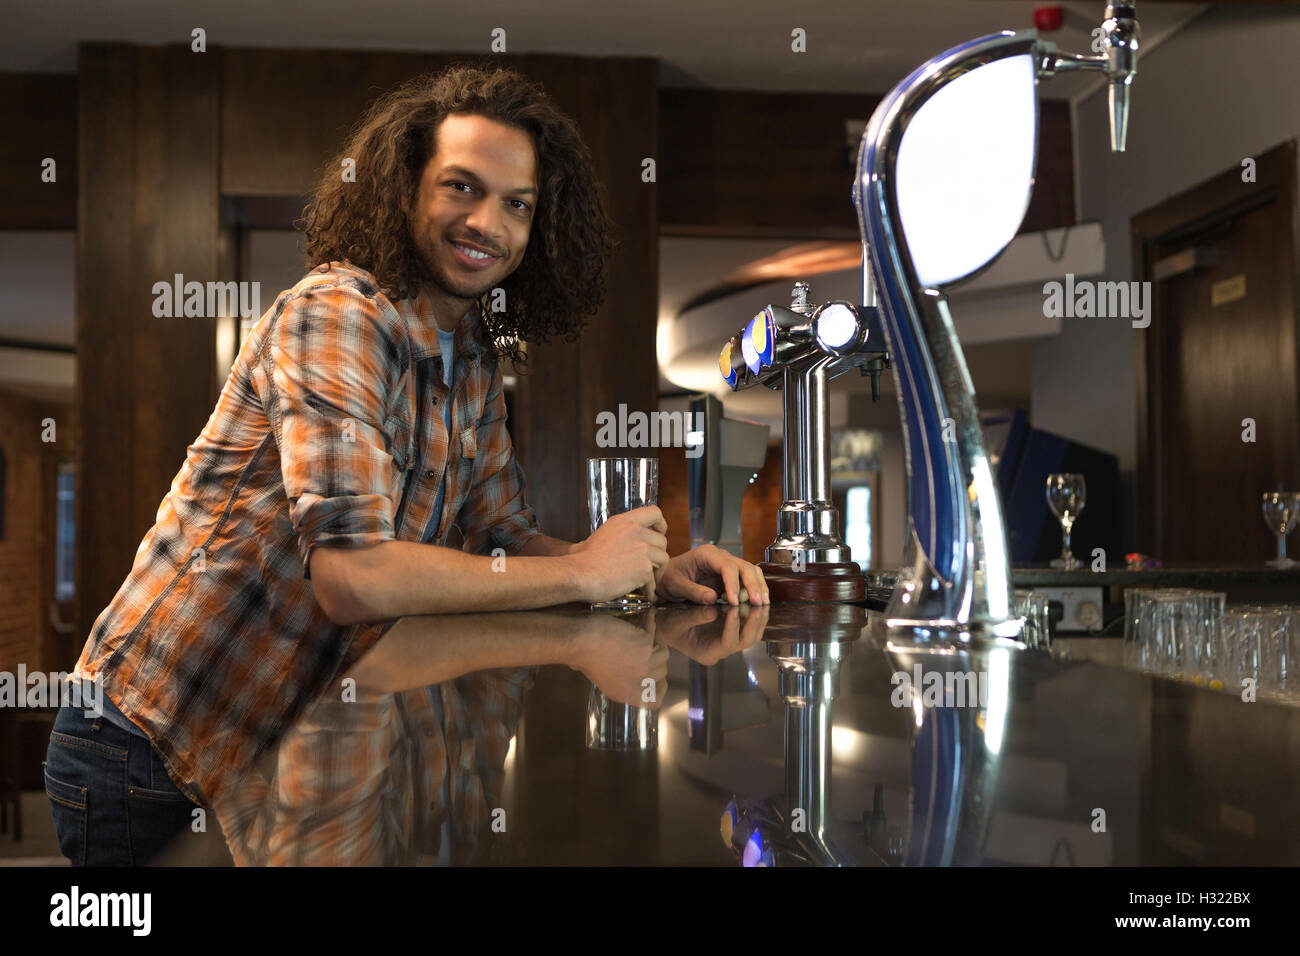 Jeune homme debout dans un bar avec une pinte, souriant à la caméra. Banque D'Images